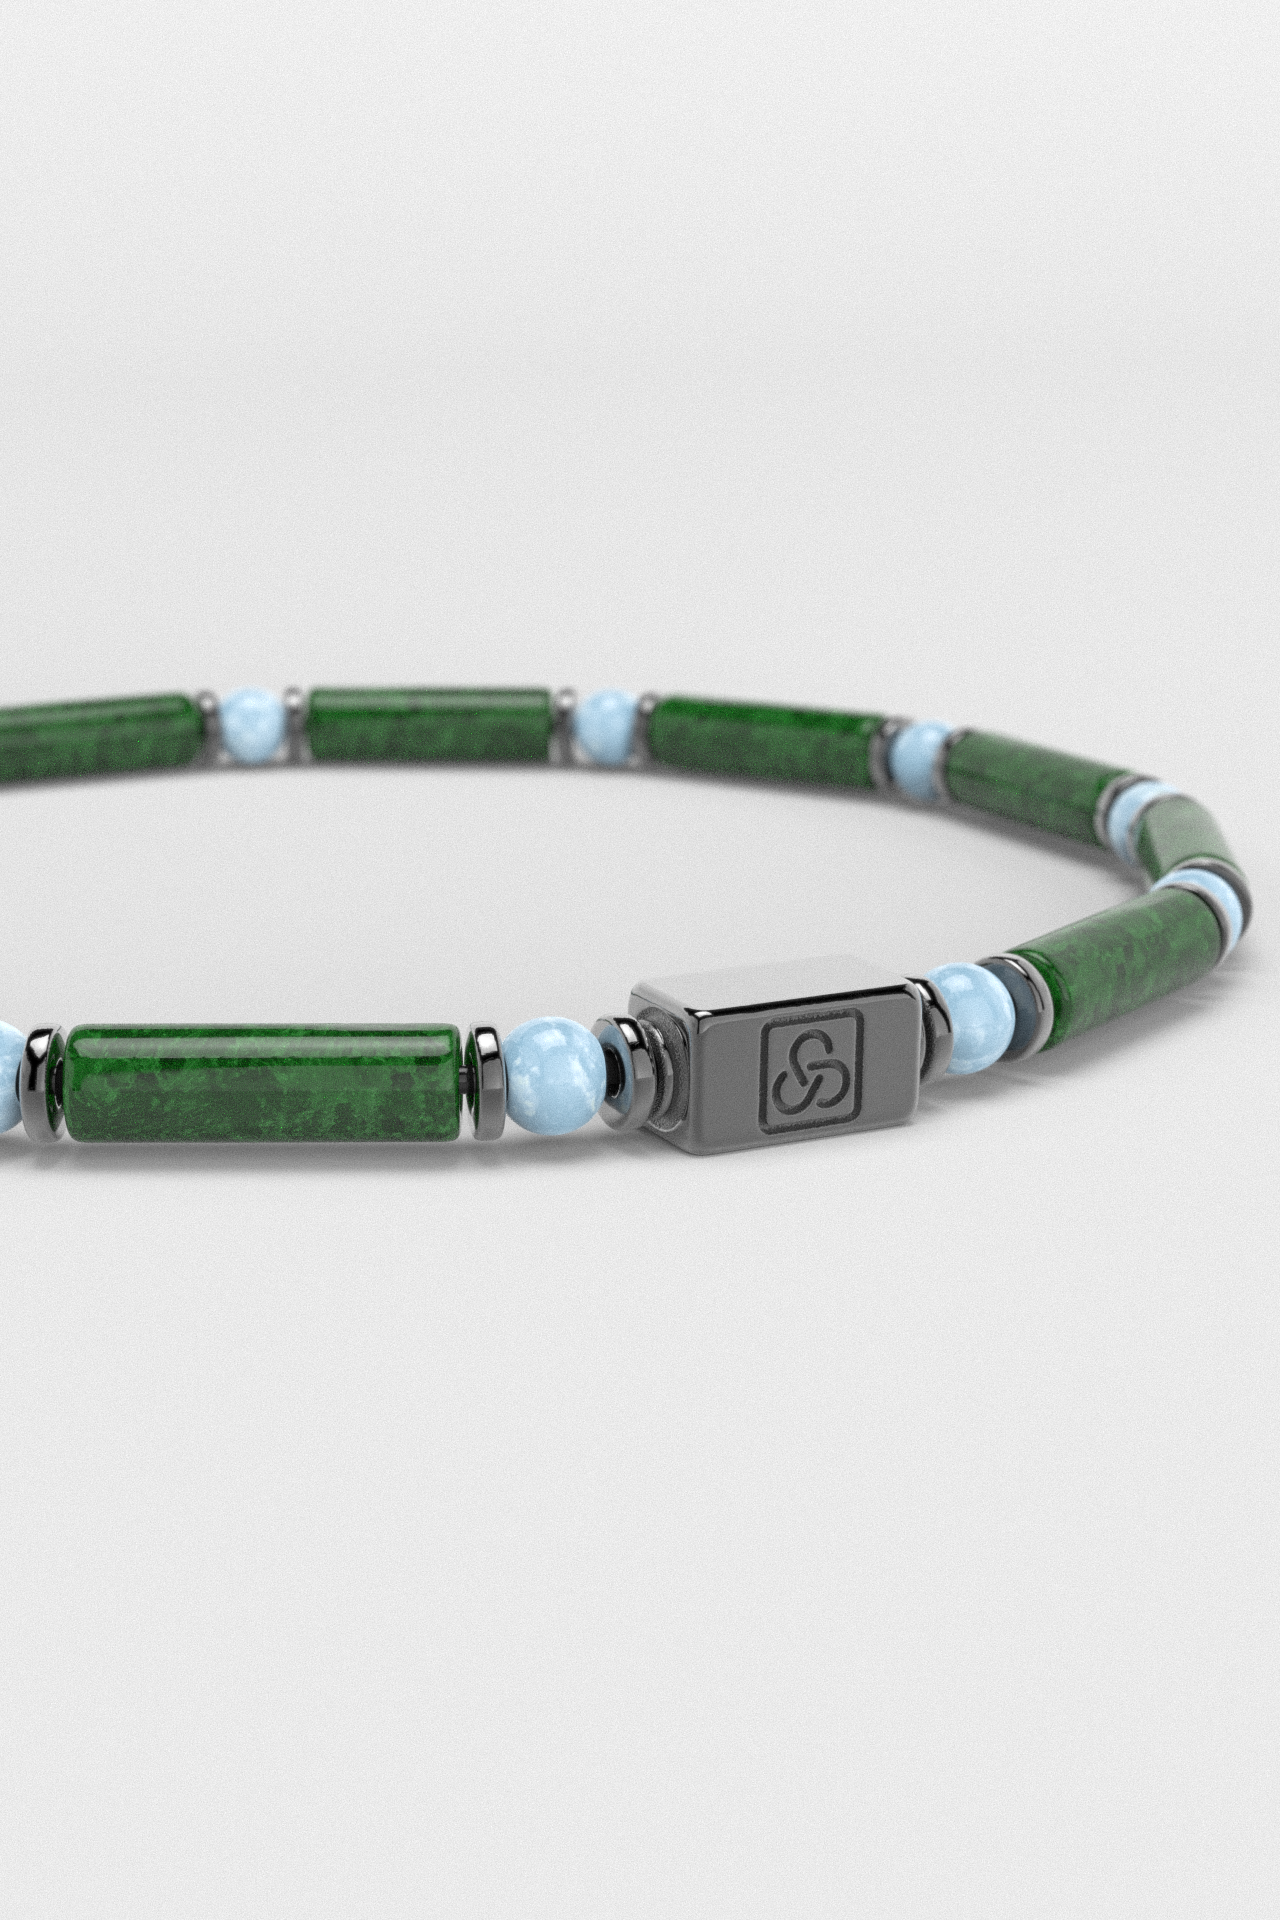 Emerald Jade + Aquamarine Bracelet 4mm | PIPE